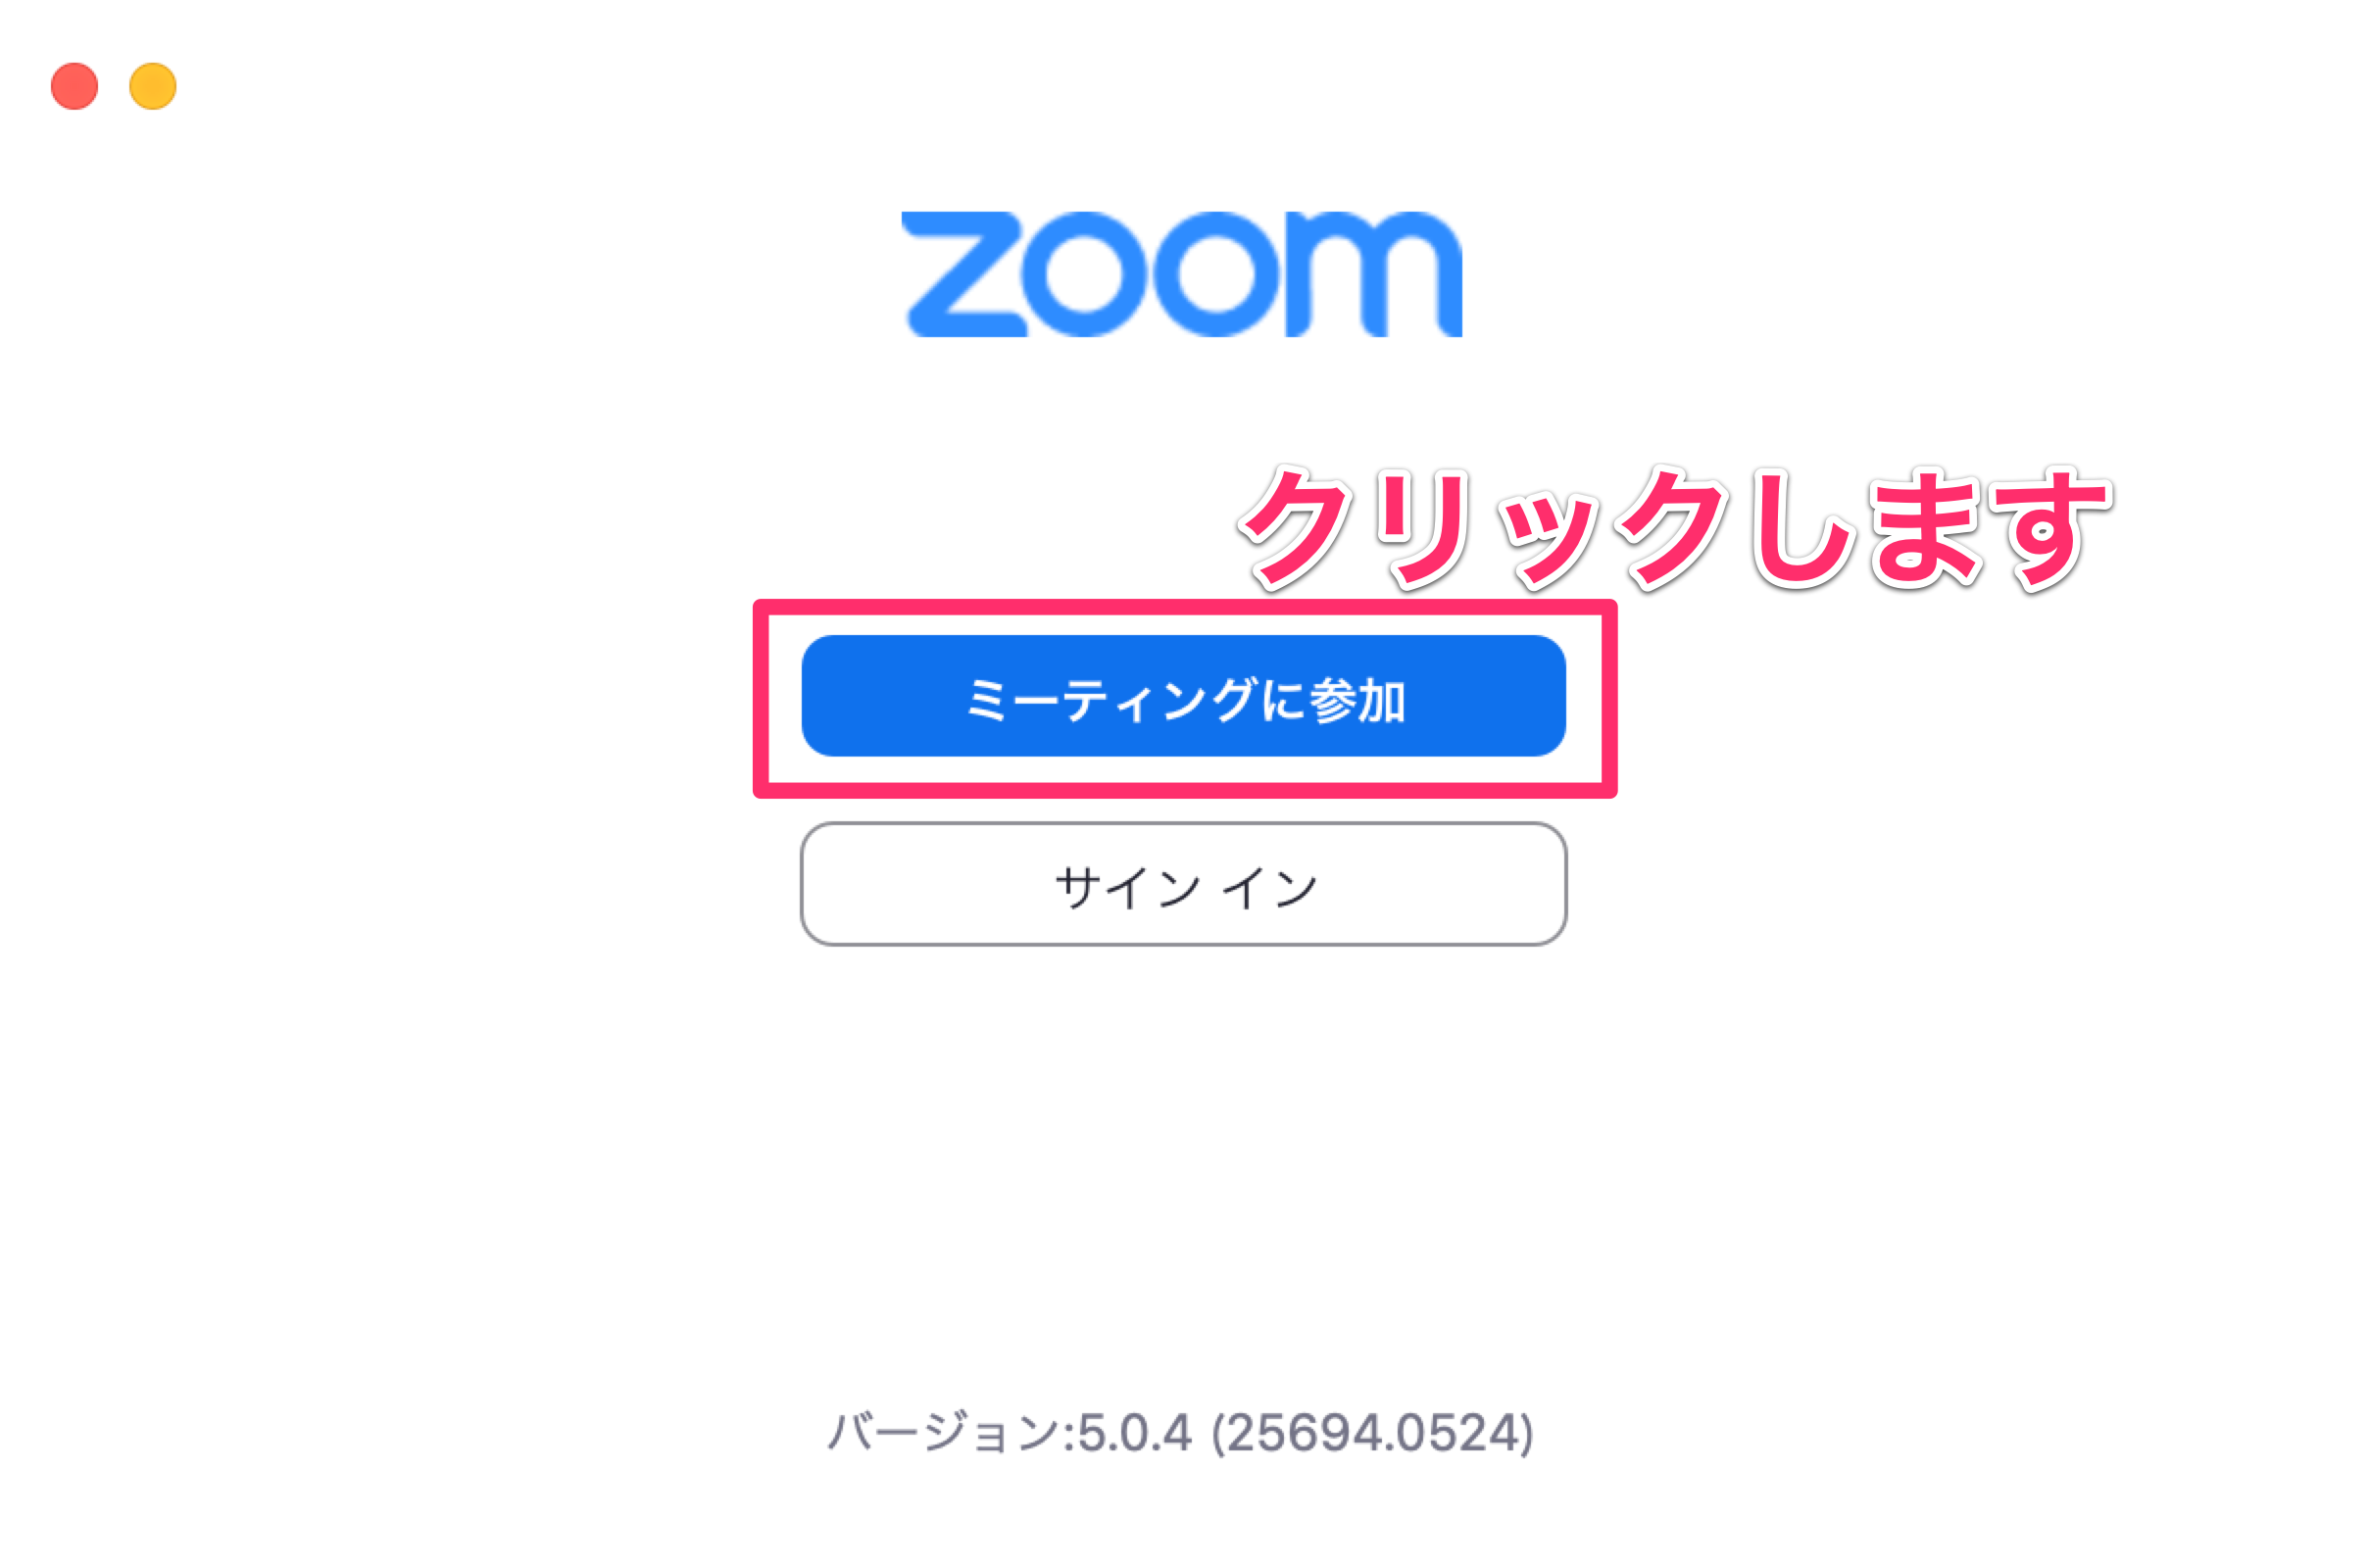 Zoom macOS 17